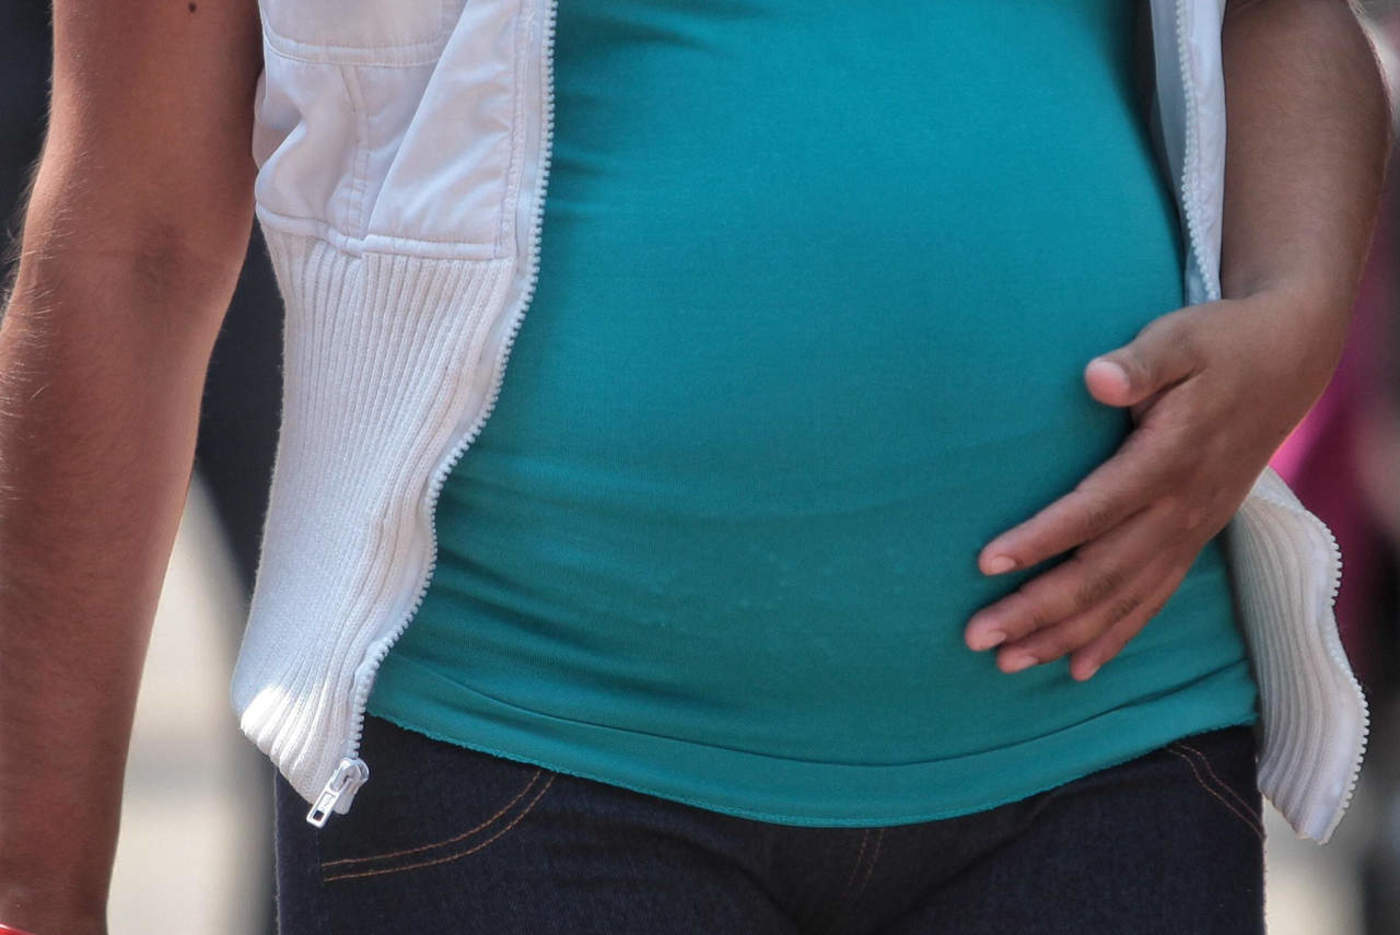 Se registran 42 casos de diabetes en embarazadas